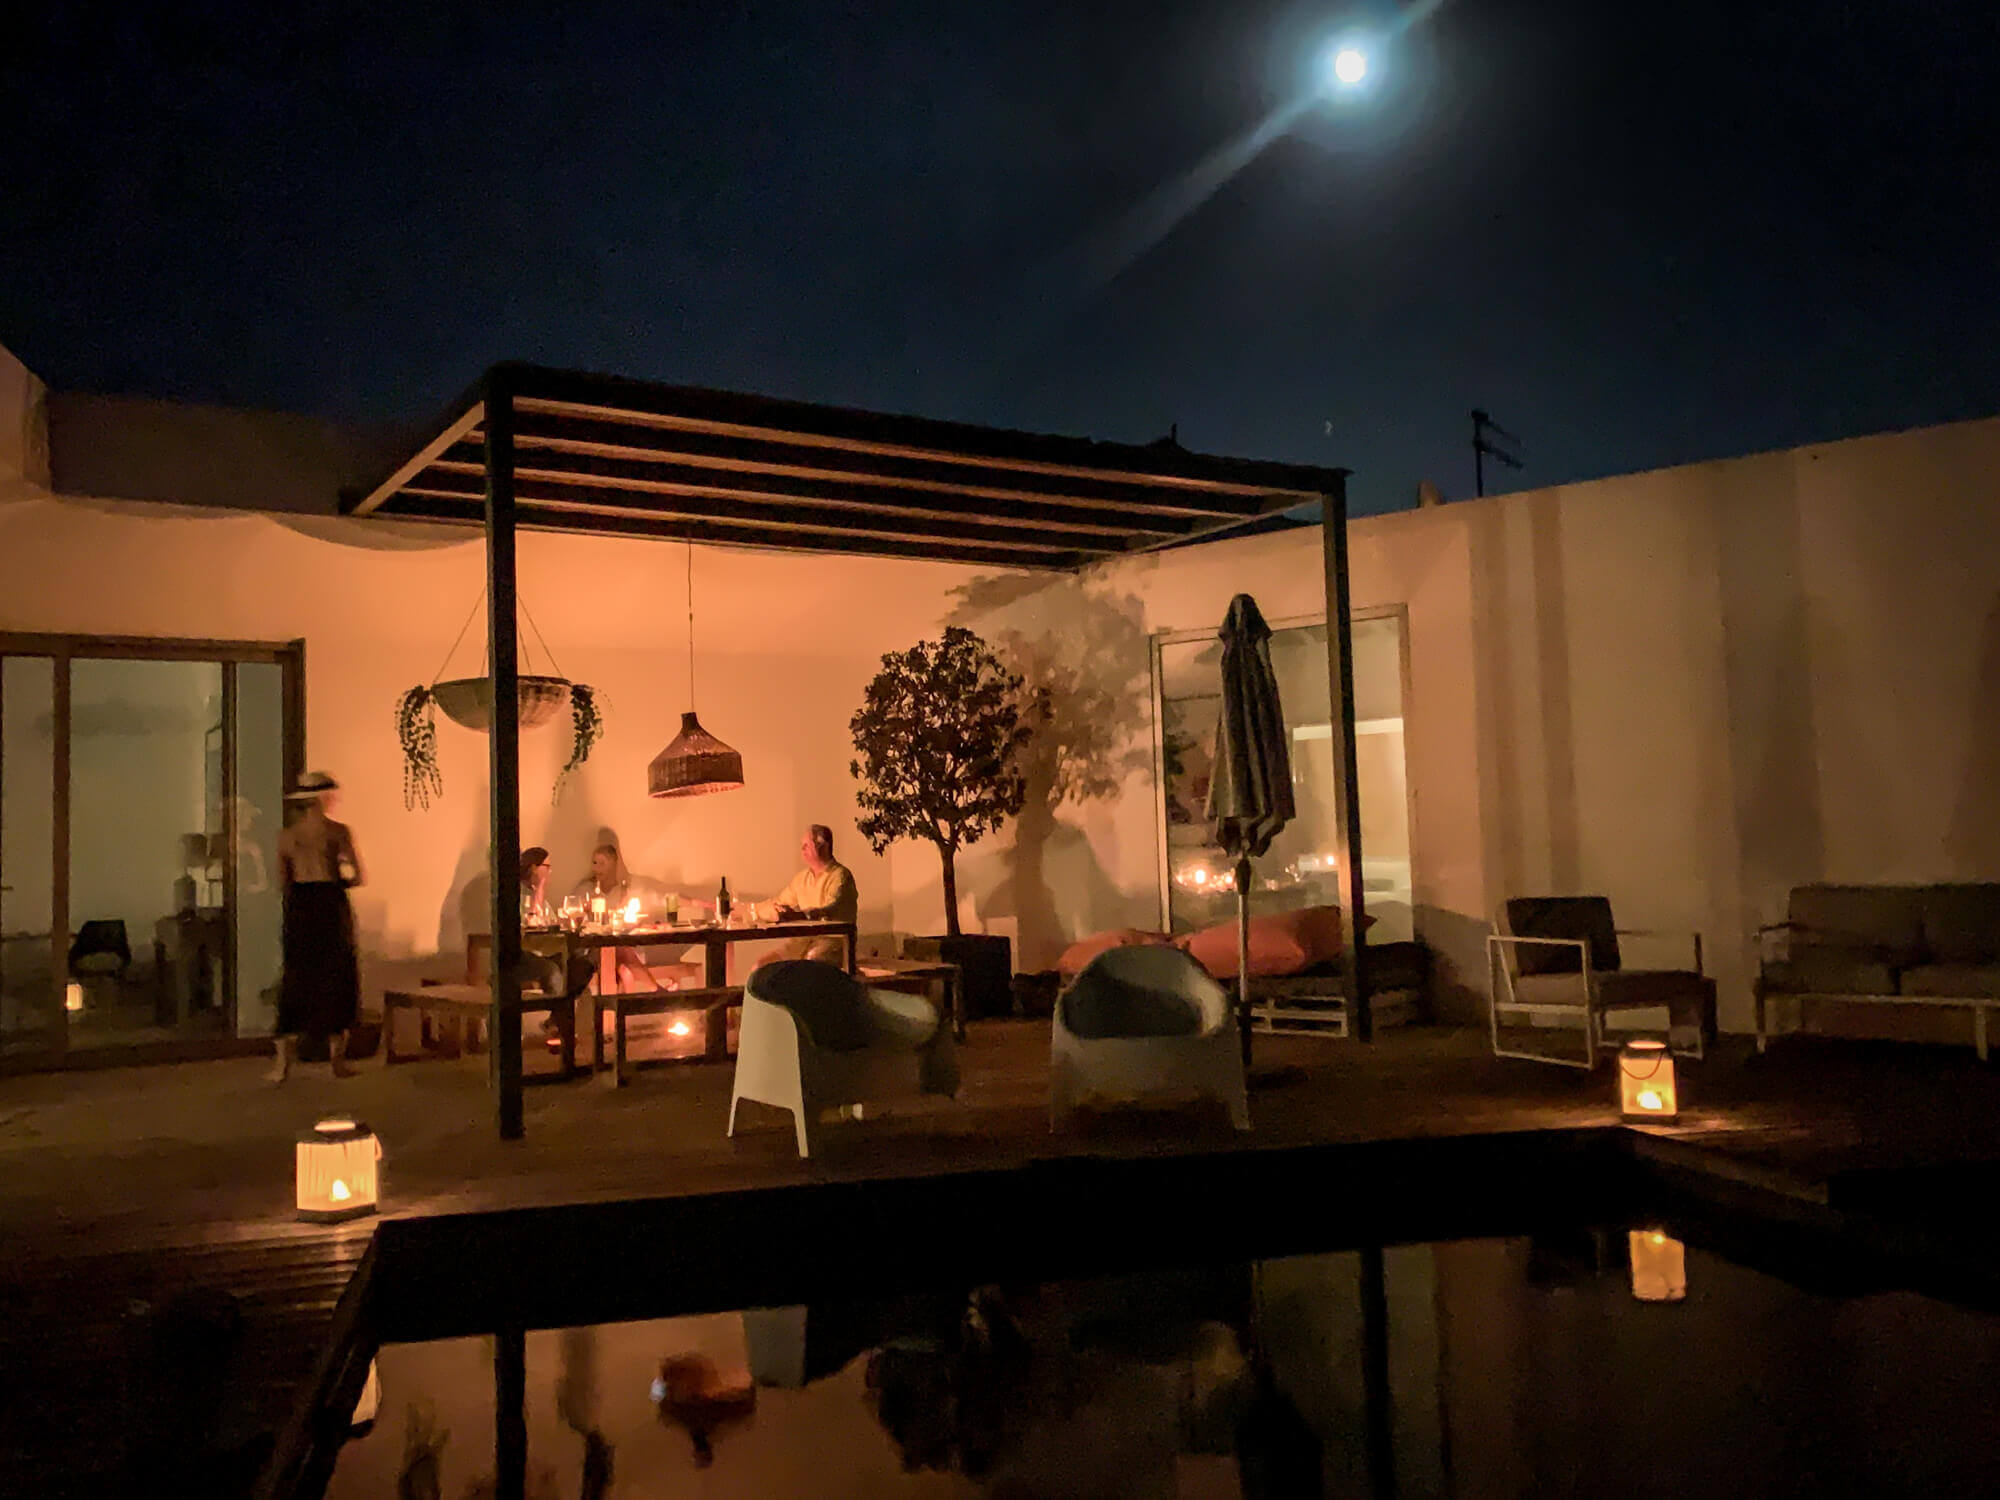 Brejos villa under full moon